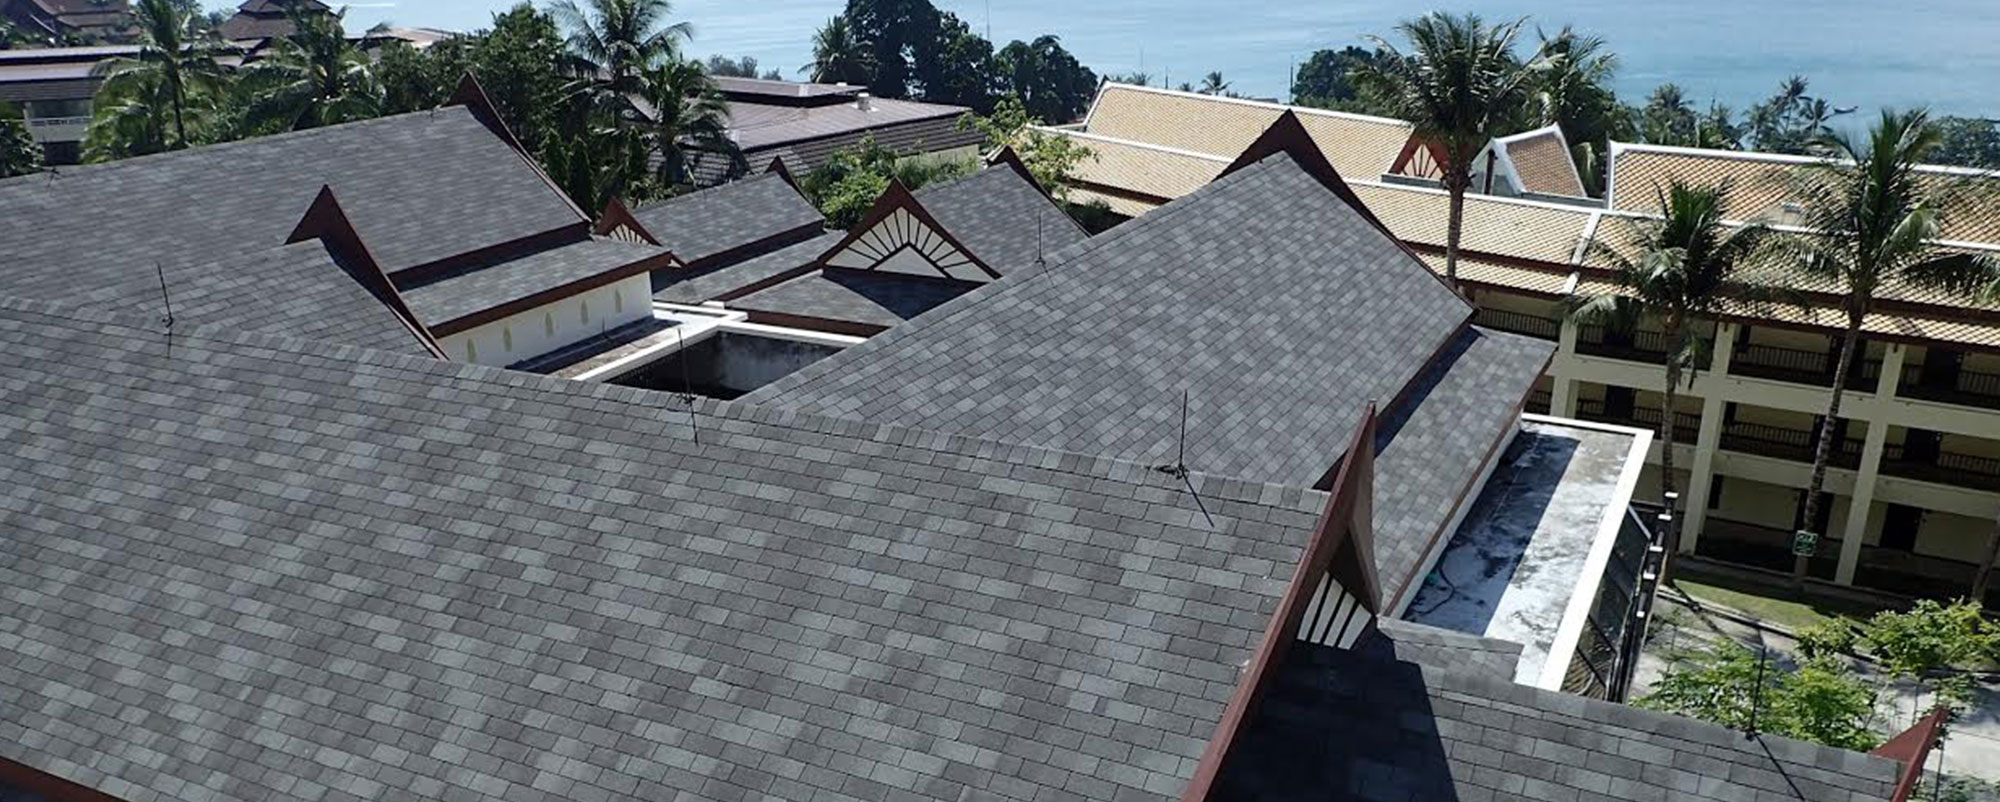 IKO Shingles Expert | Best Roofing Shingles | Asphalt Roofing Shingles